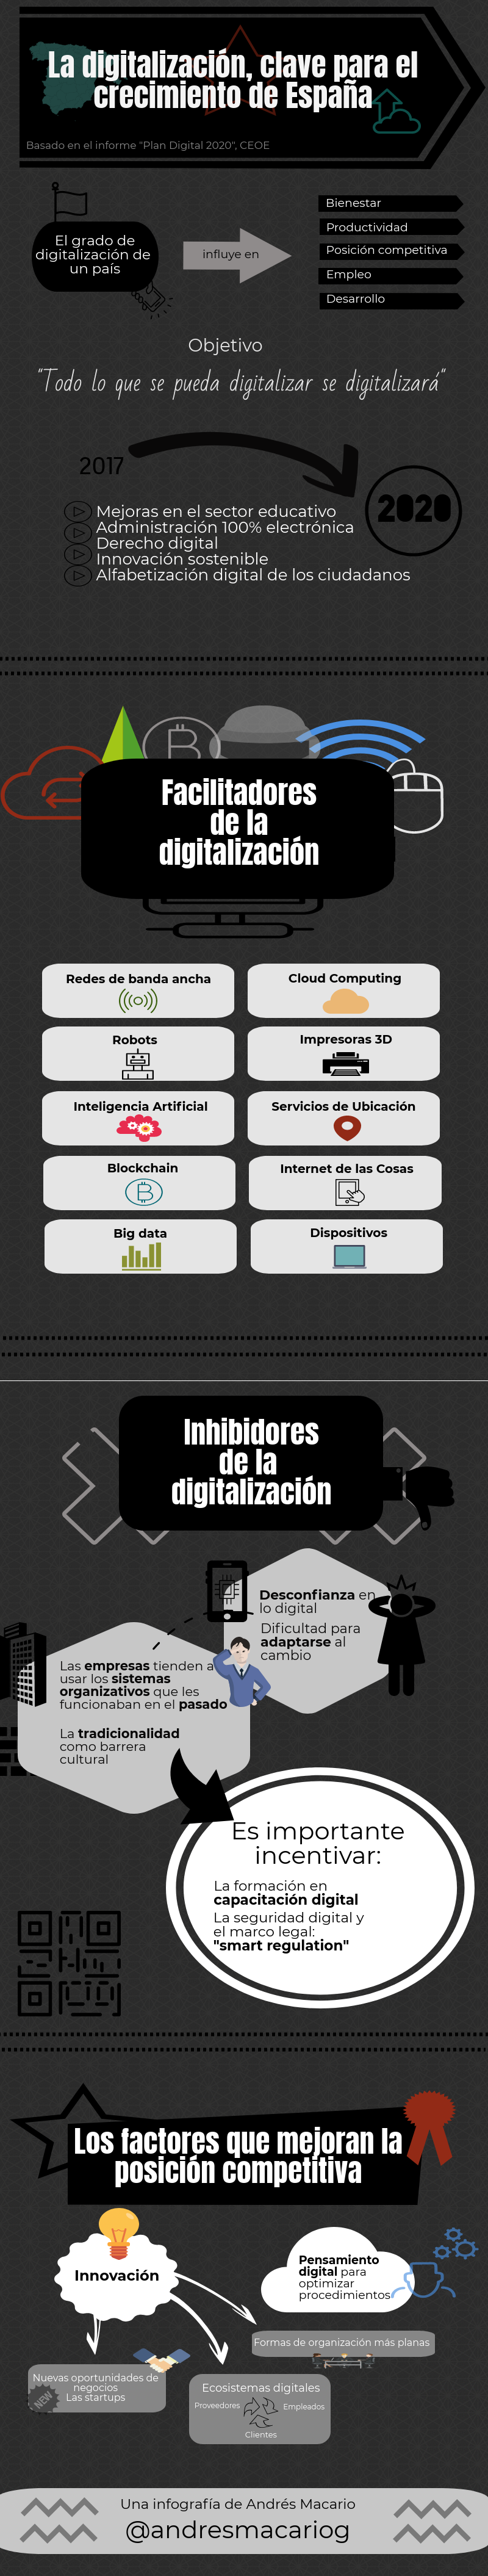 La digitalizacion clave para el crecimiento de España - infografía Andrés Macario